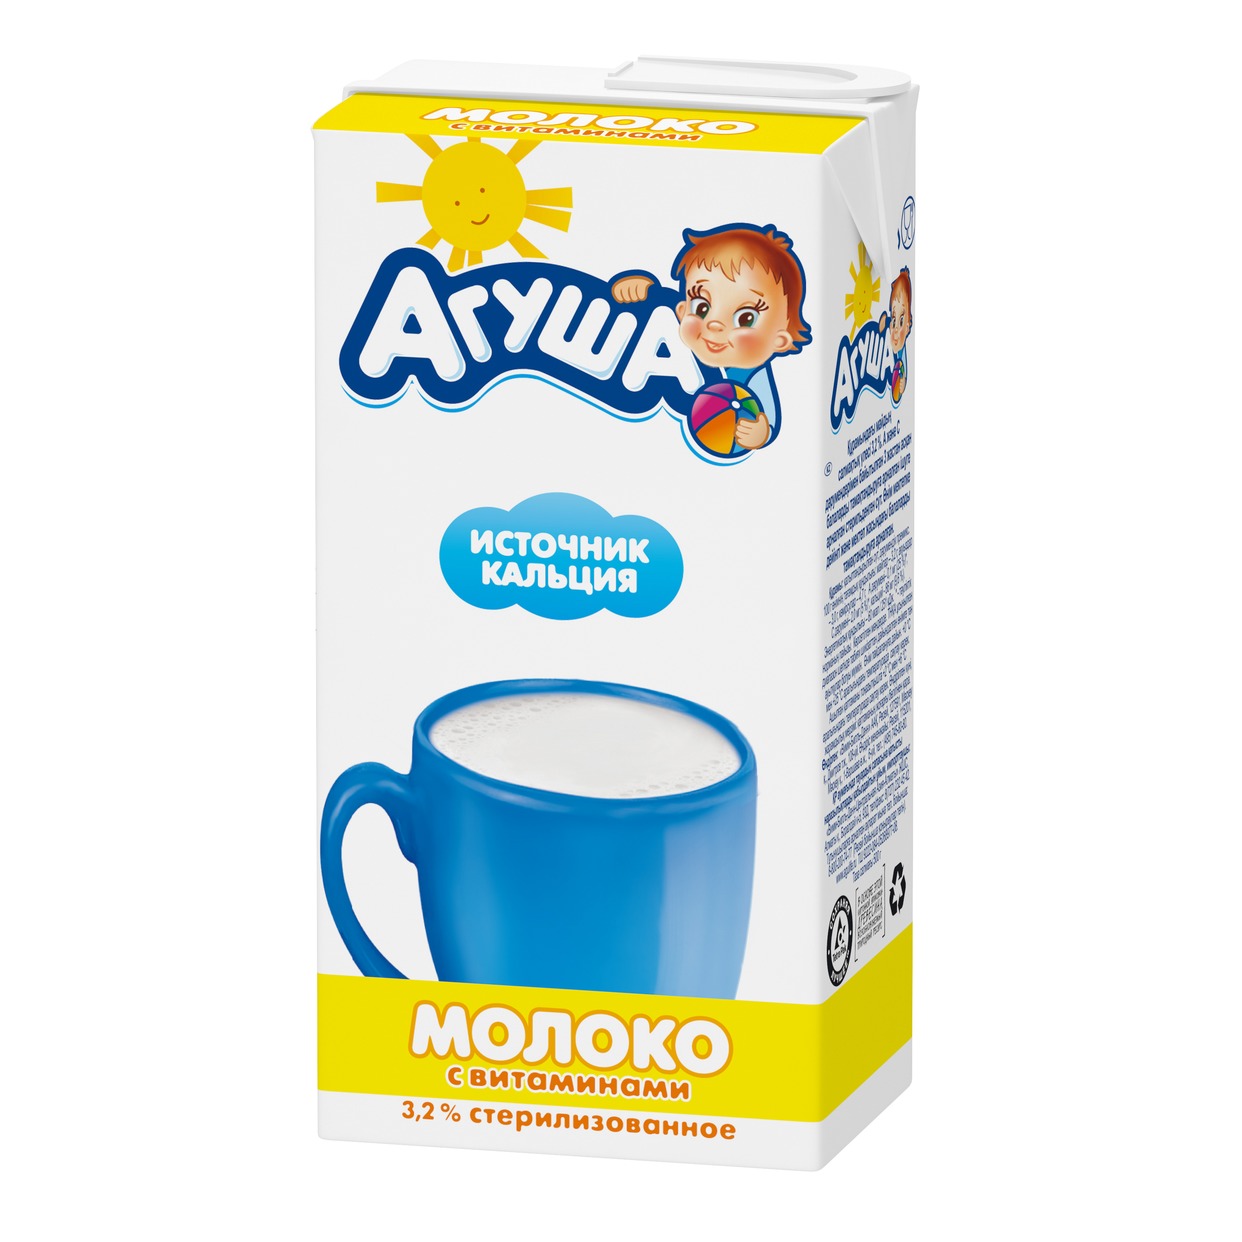 АГУША Молоко детское 3.2% 500г по акции в Пятерочке